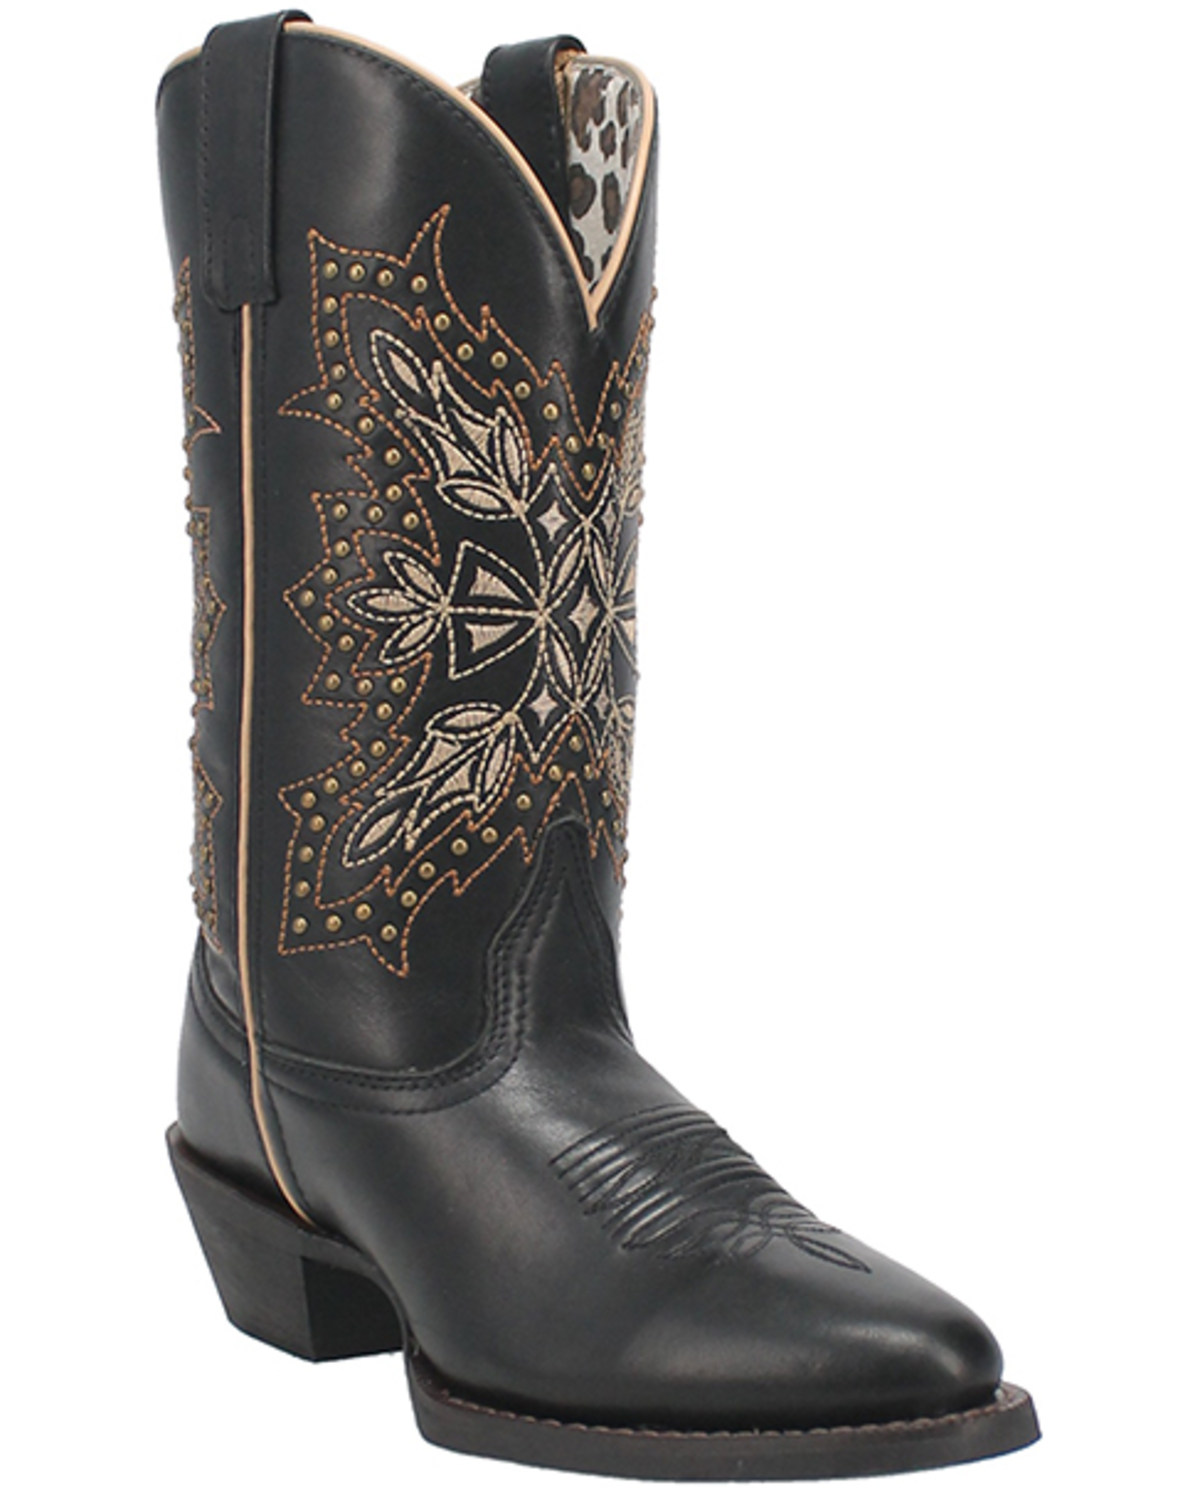 Laredo Women's Journee Western Boots